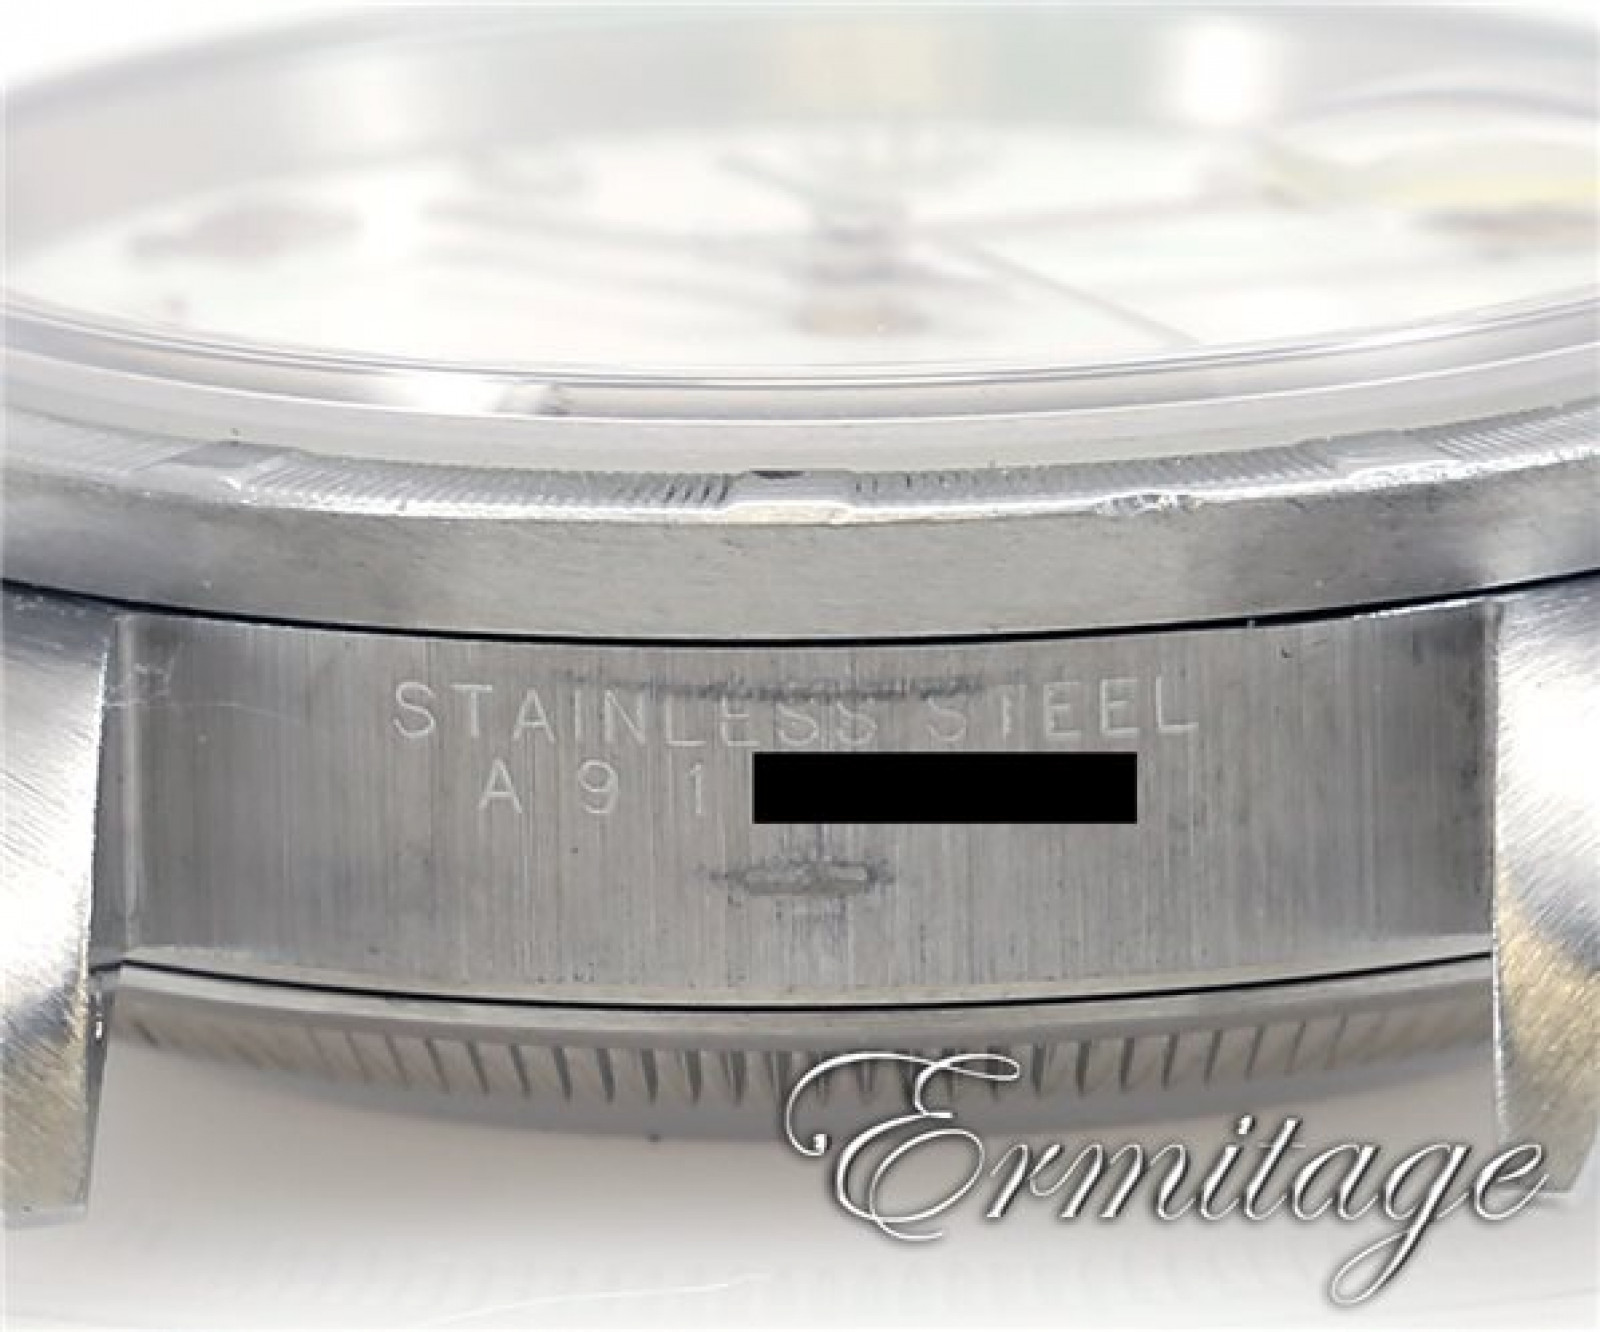 Rolex Date 15210 Steel White Year 2000